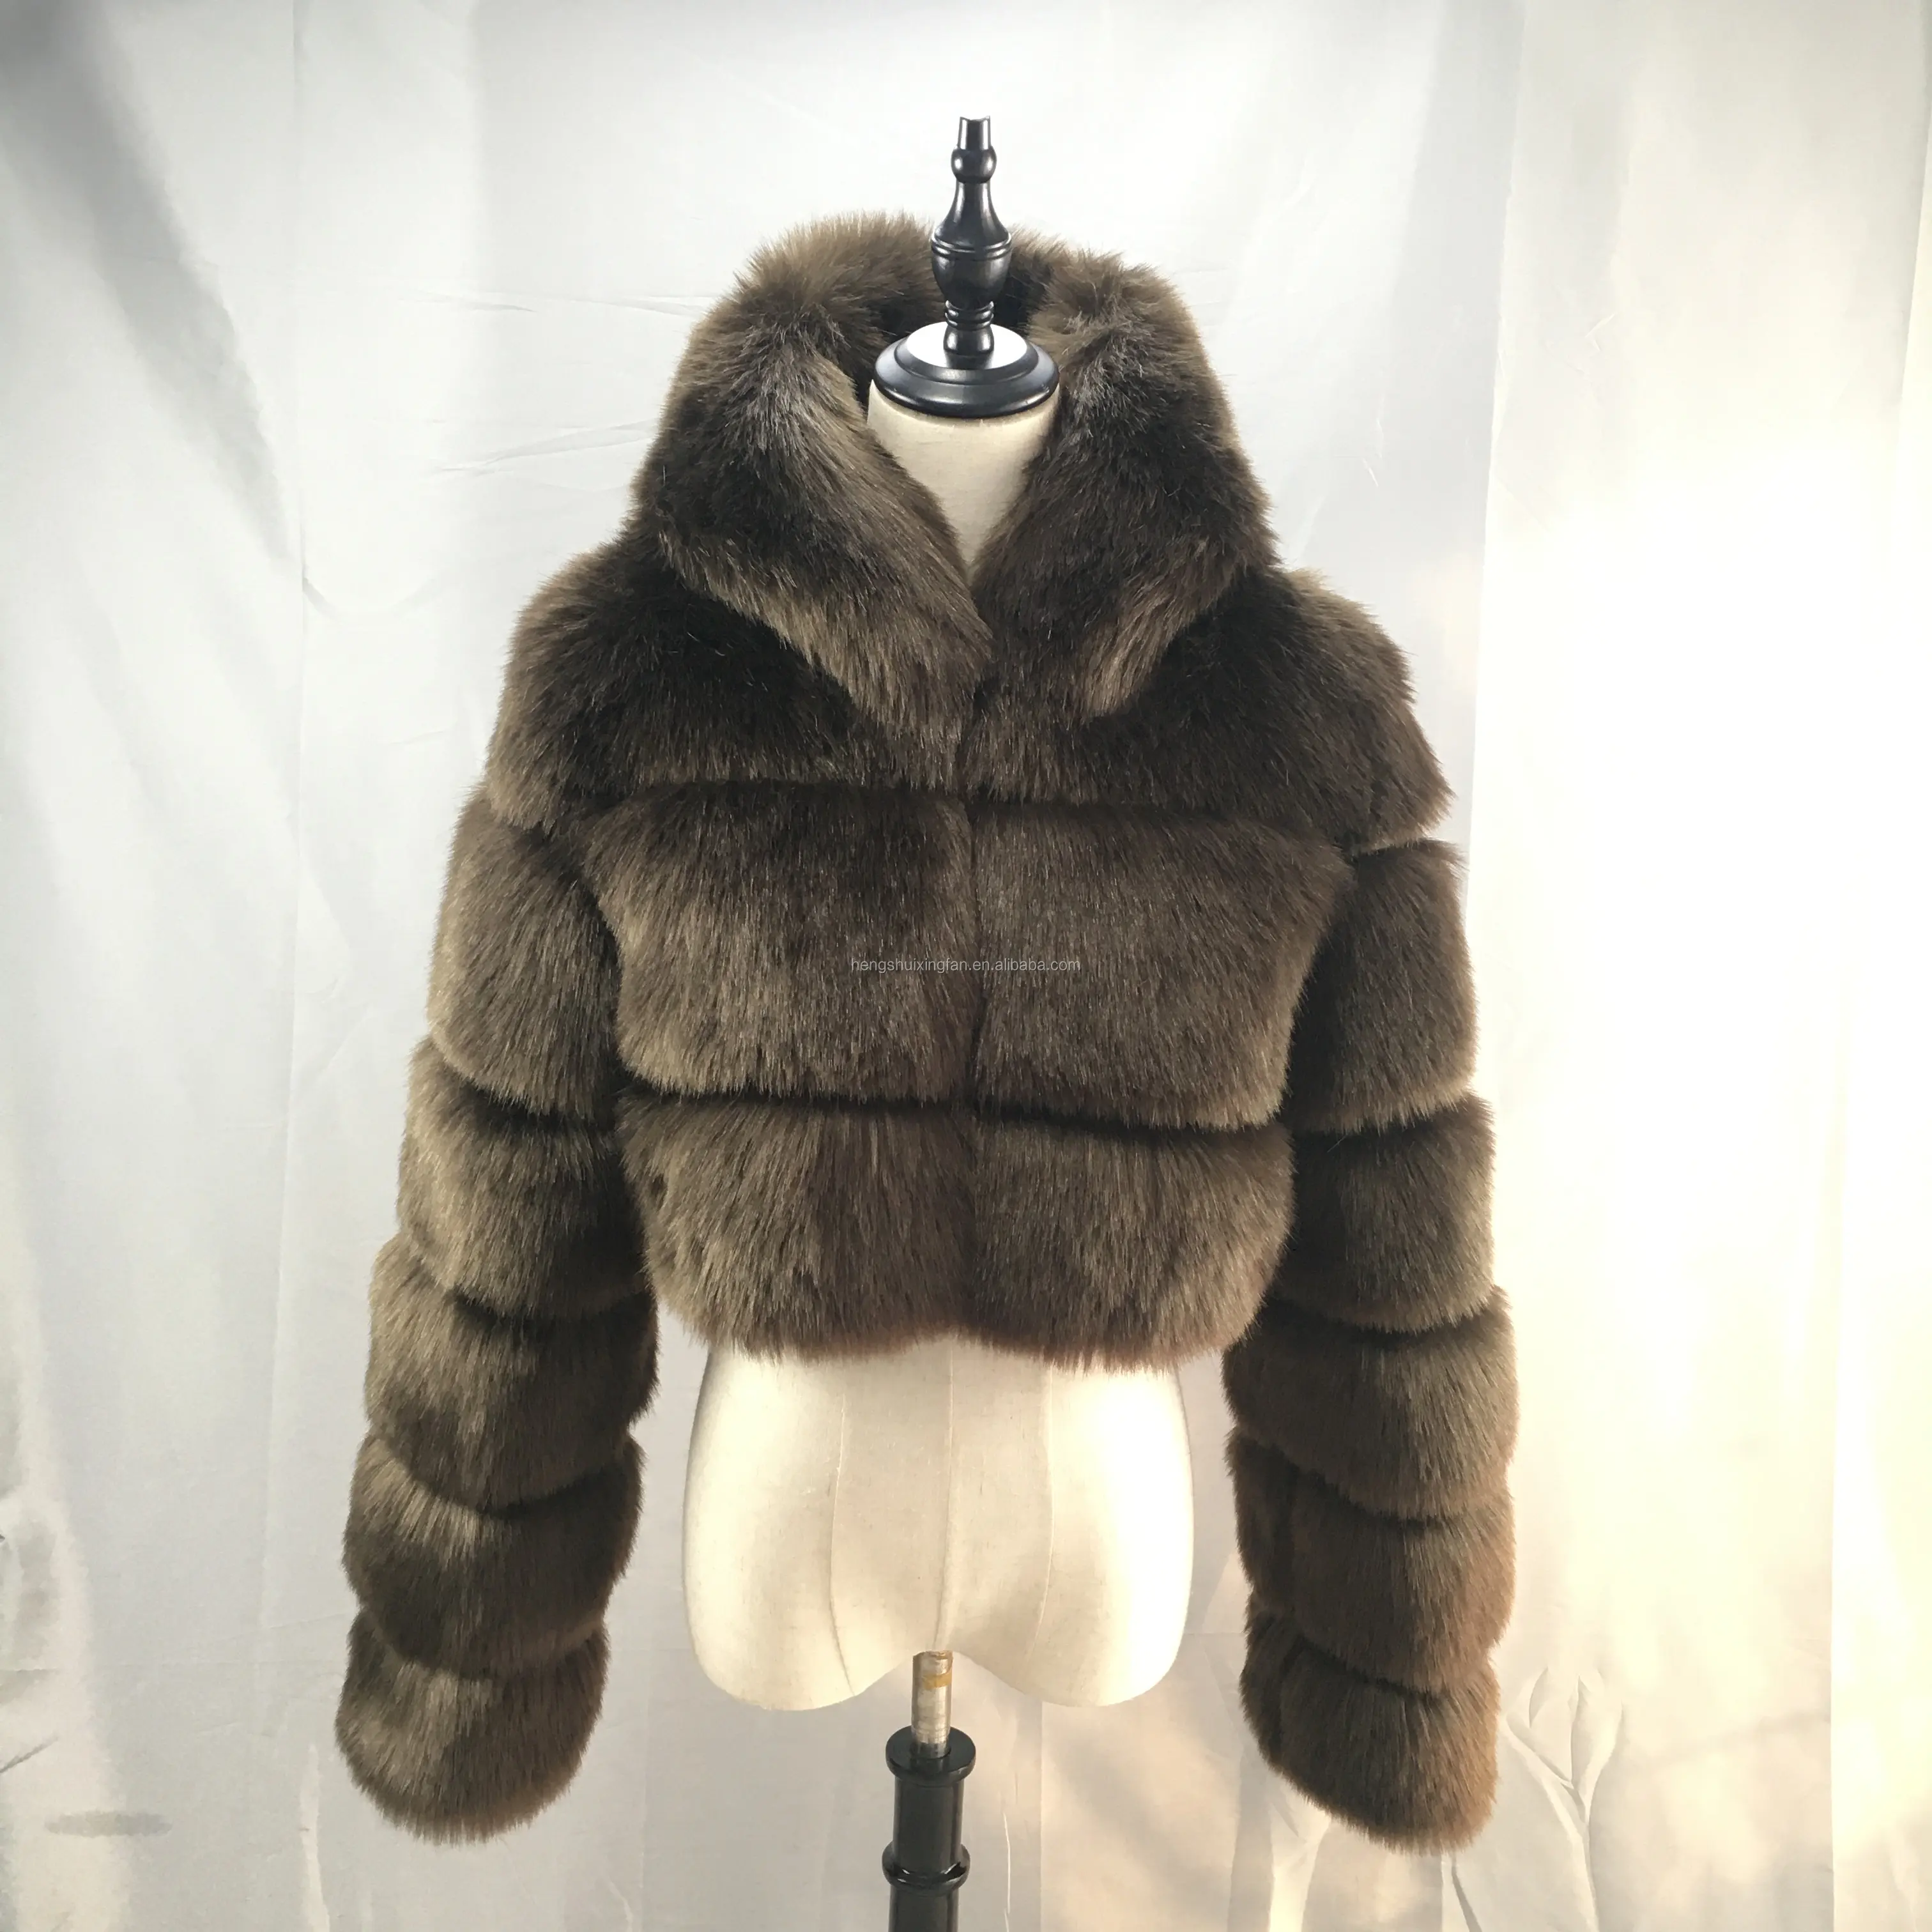 New Lady Artificial Fur Outwear Faux Fox Fur Overcoat with Hood Fake Faux Fur Coat Women